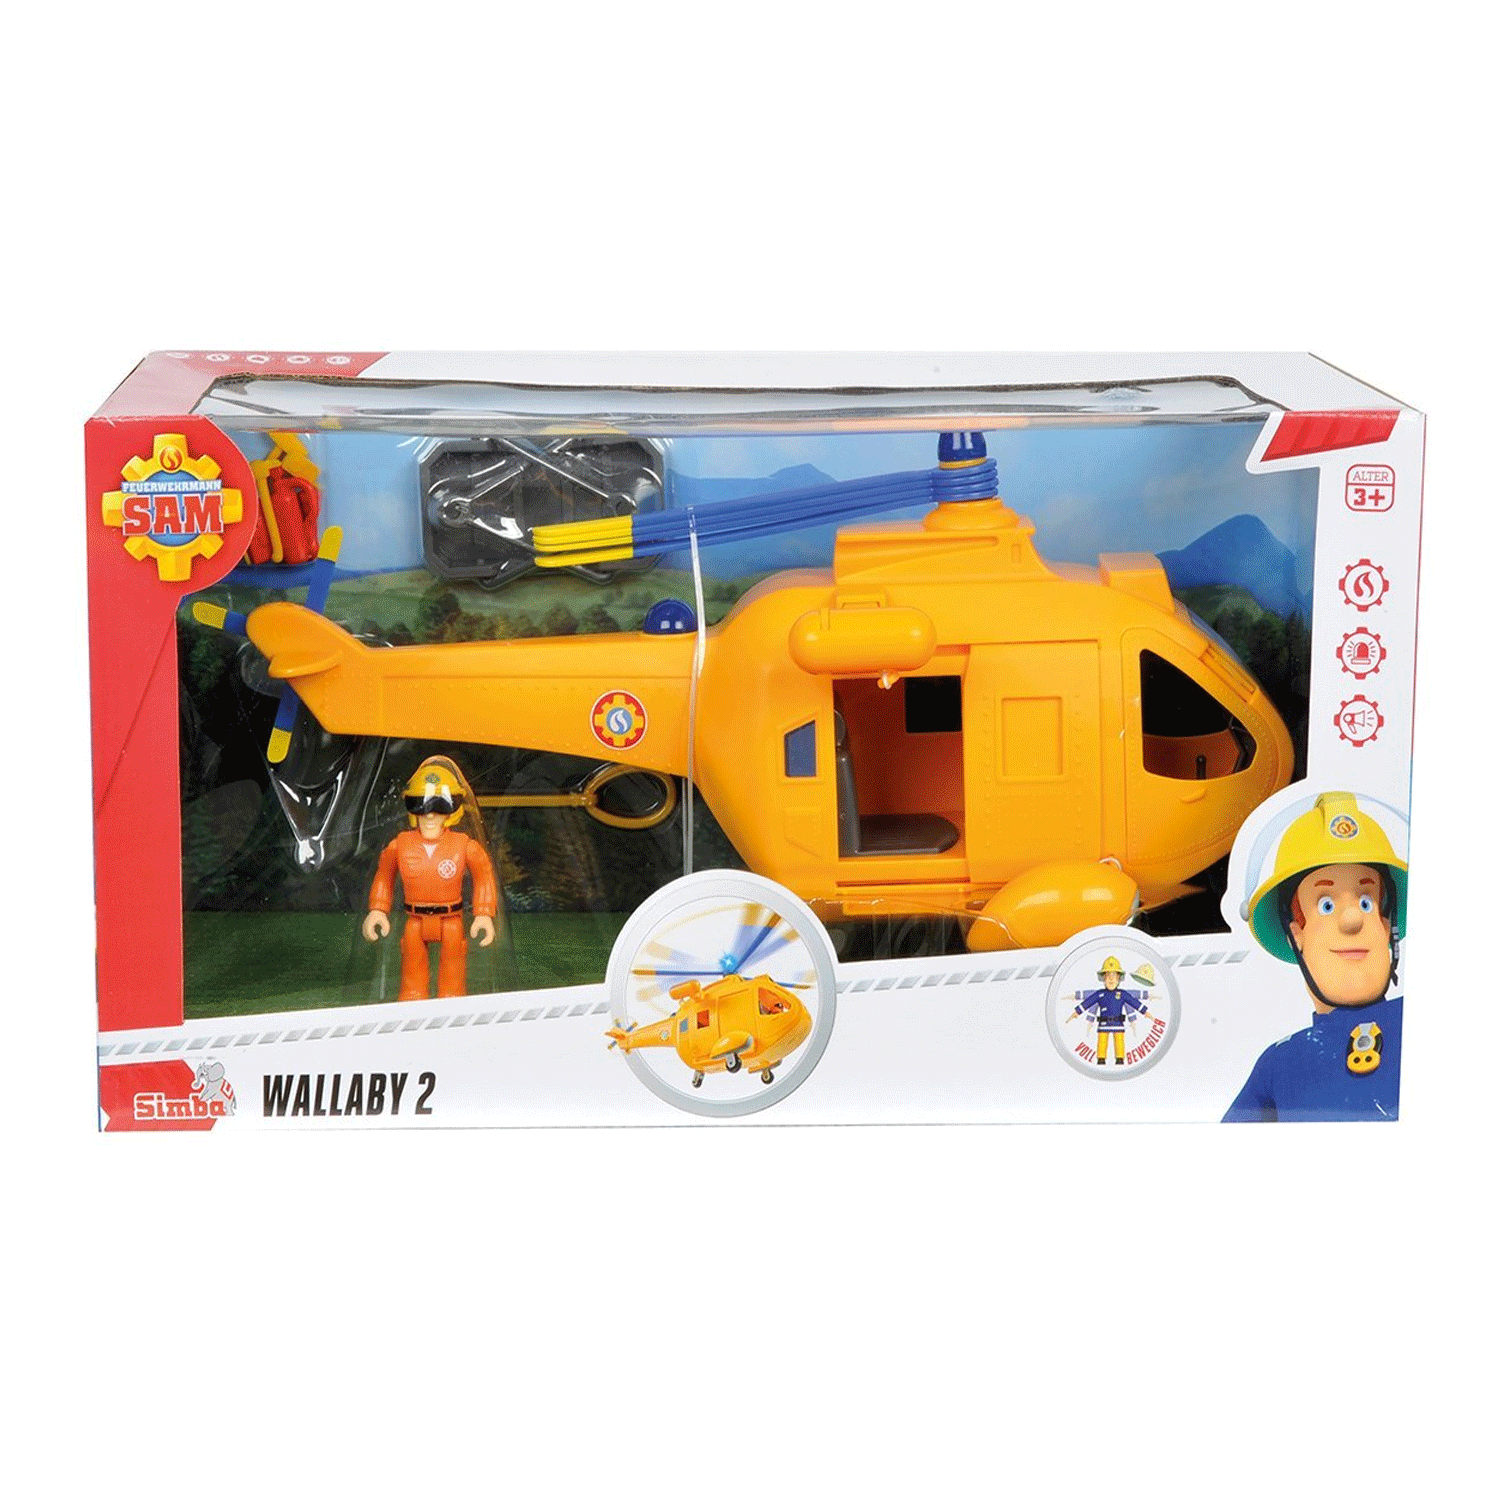 jouet de sam le pompier